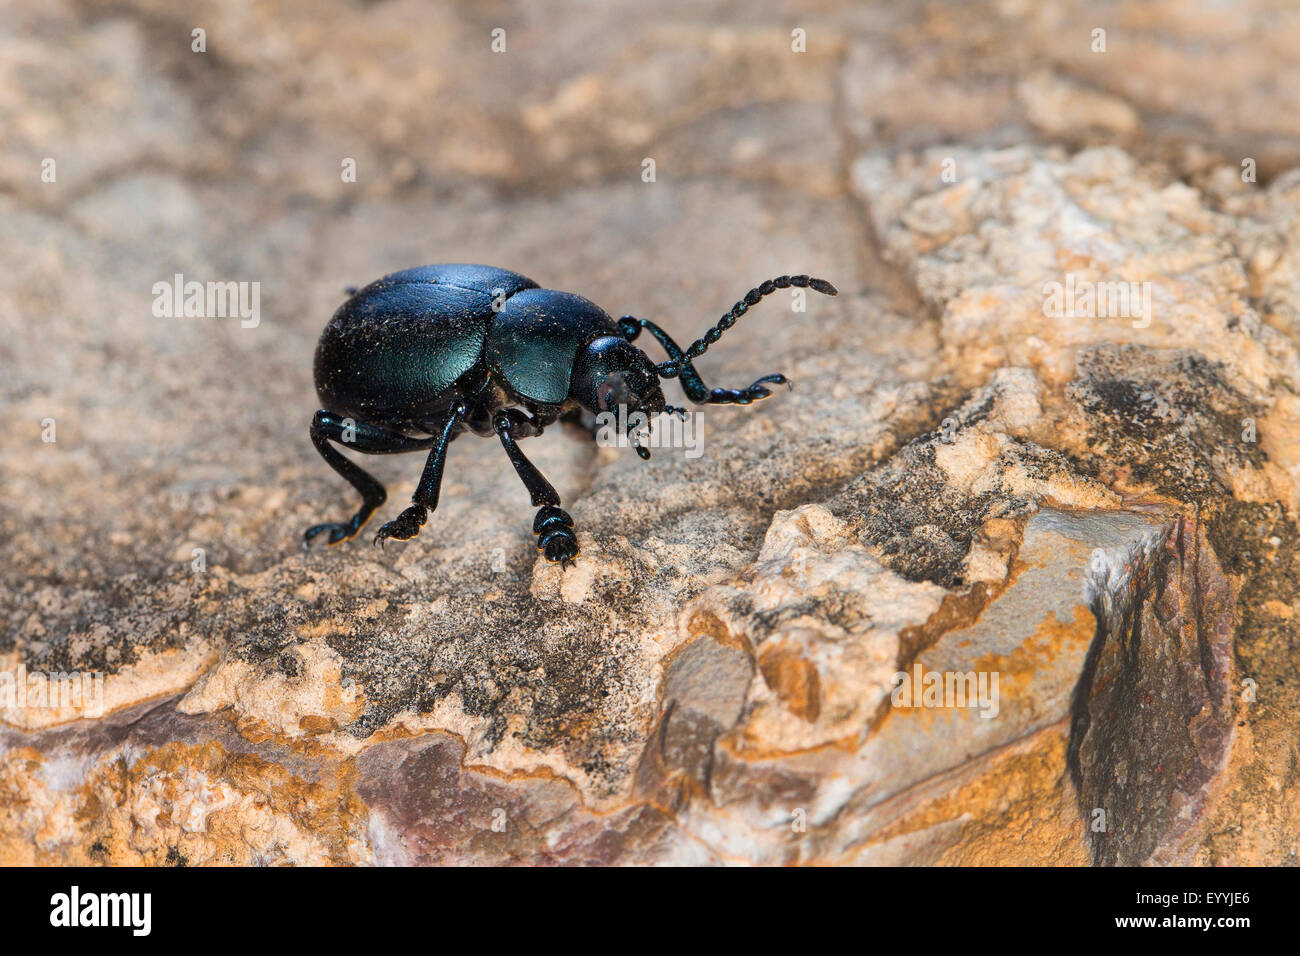 Spewer Blut, Blut spuckt Käfer (Timarcha spec.), blutige Nase Käfer auf einem Stein, Deutschland Stockfoto